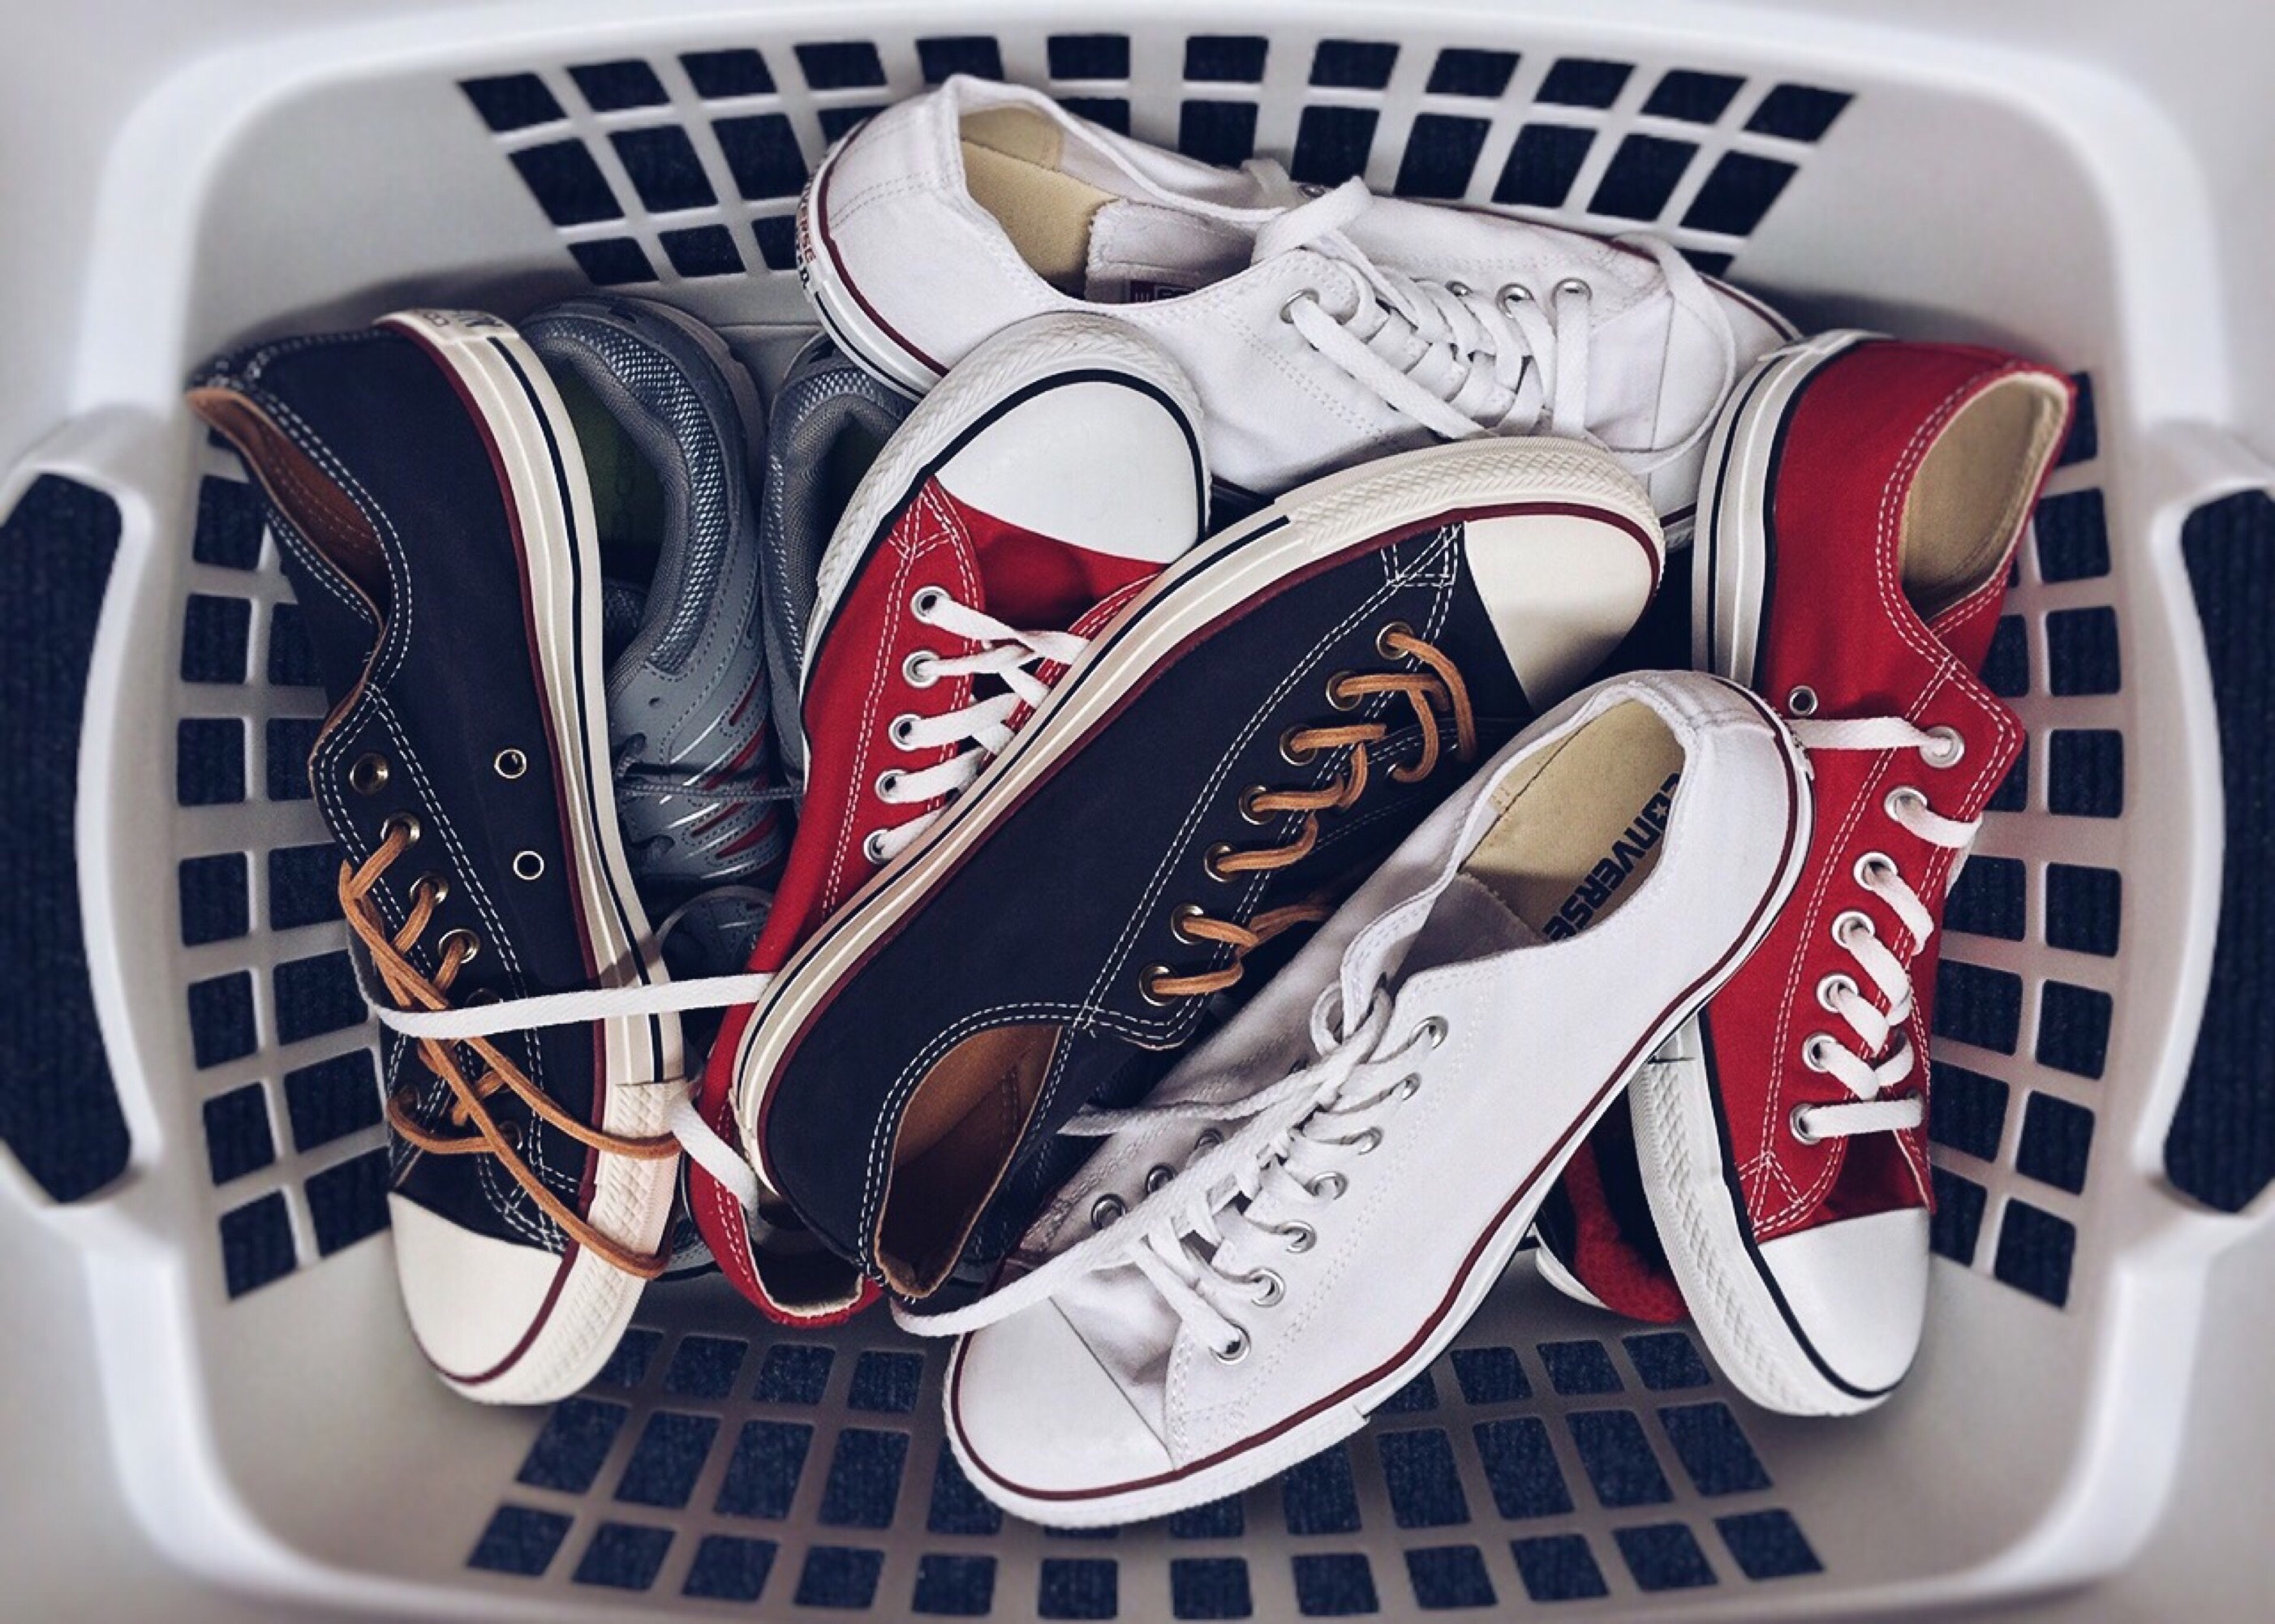 Accountant Interesseren Zeggen 4x schoenen schoonmaken: stof, suède, leer en witte sneakers – Hét blog  over schoonmaken